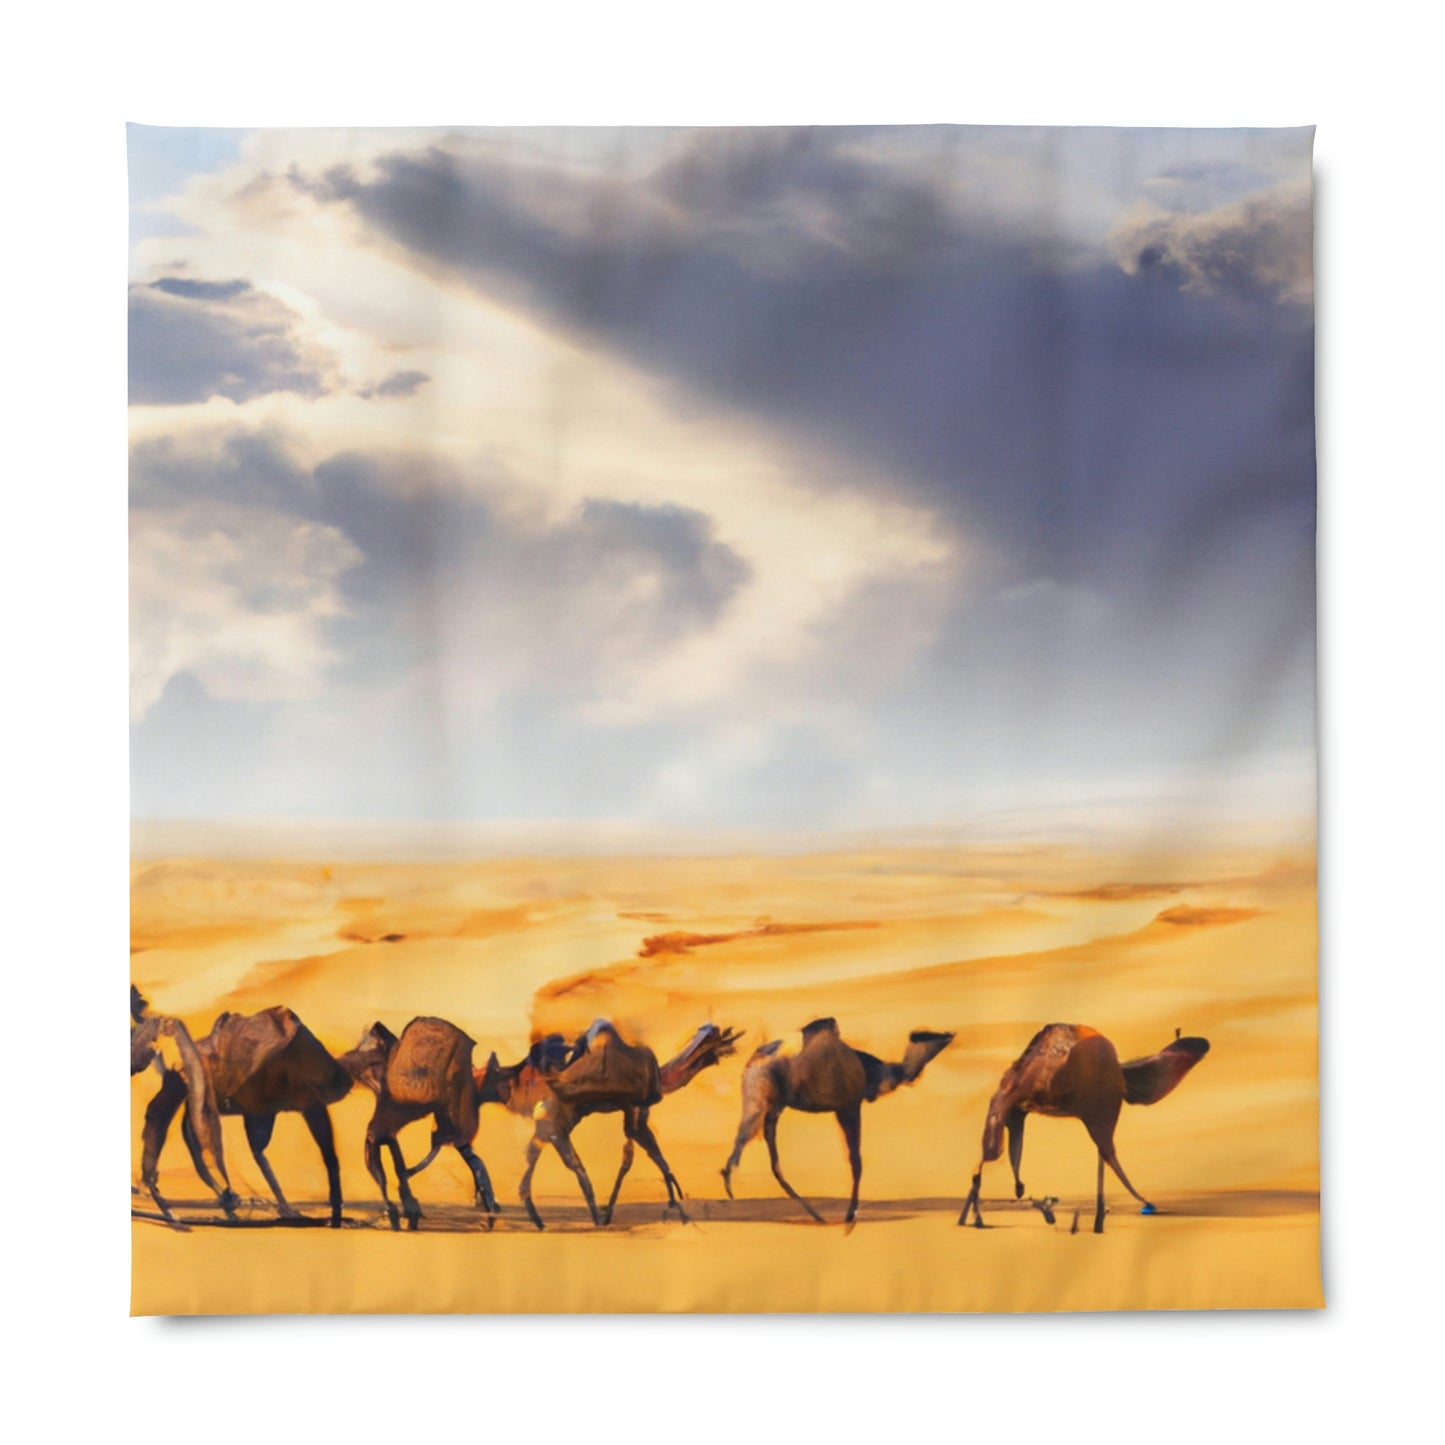 Duvet Cover - Camel Caravan